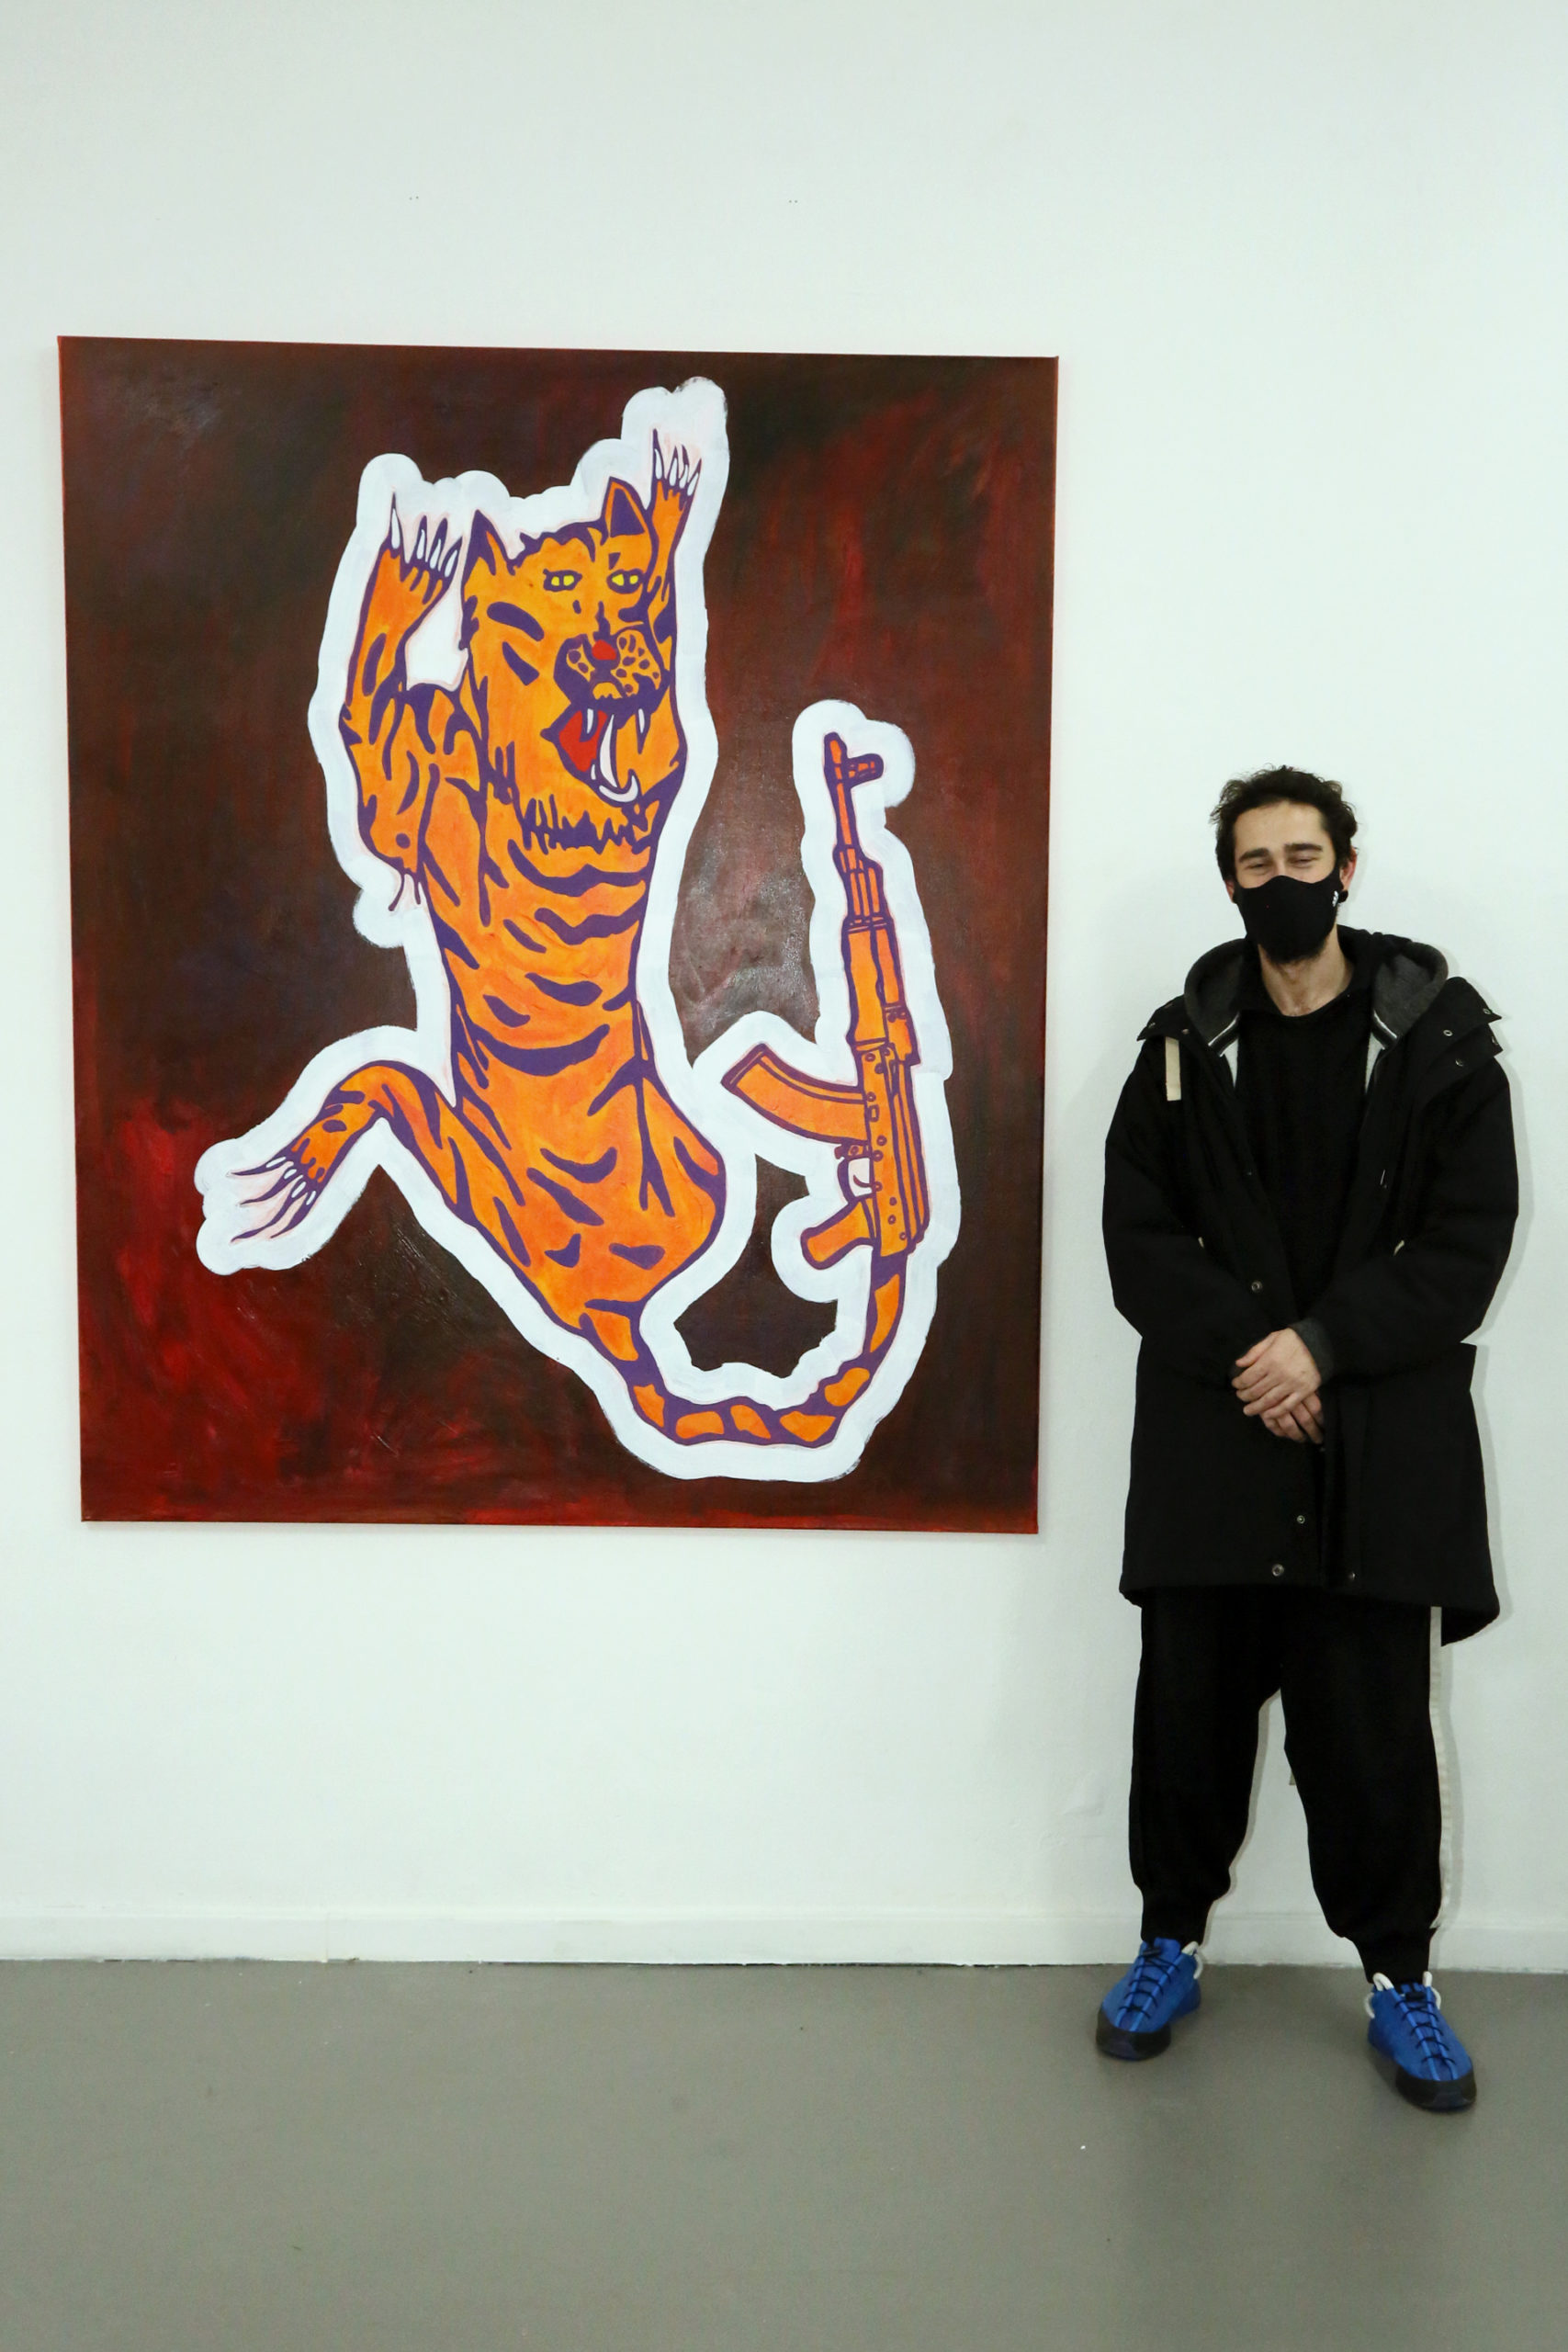 Farhad Farzali - Tiger is A Tiger Tiger is A Tiger